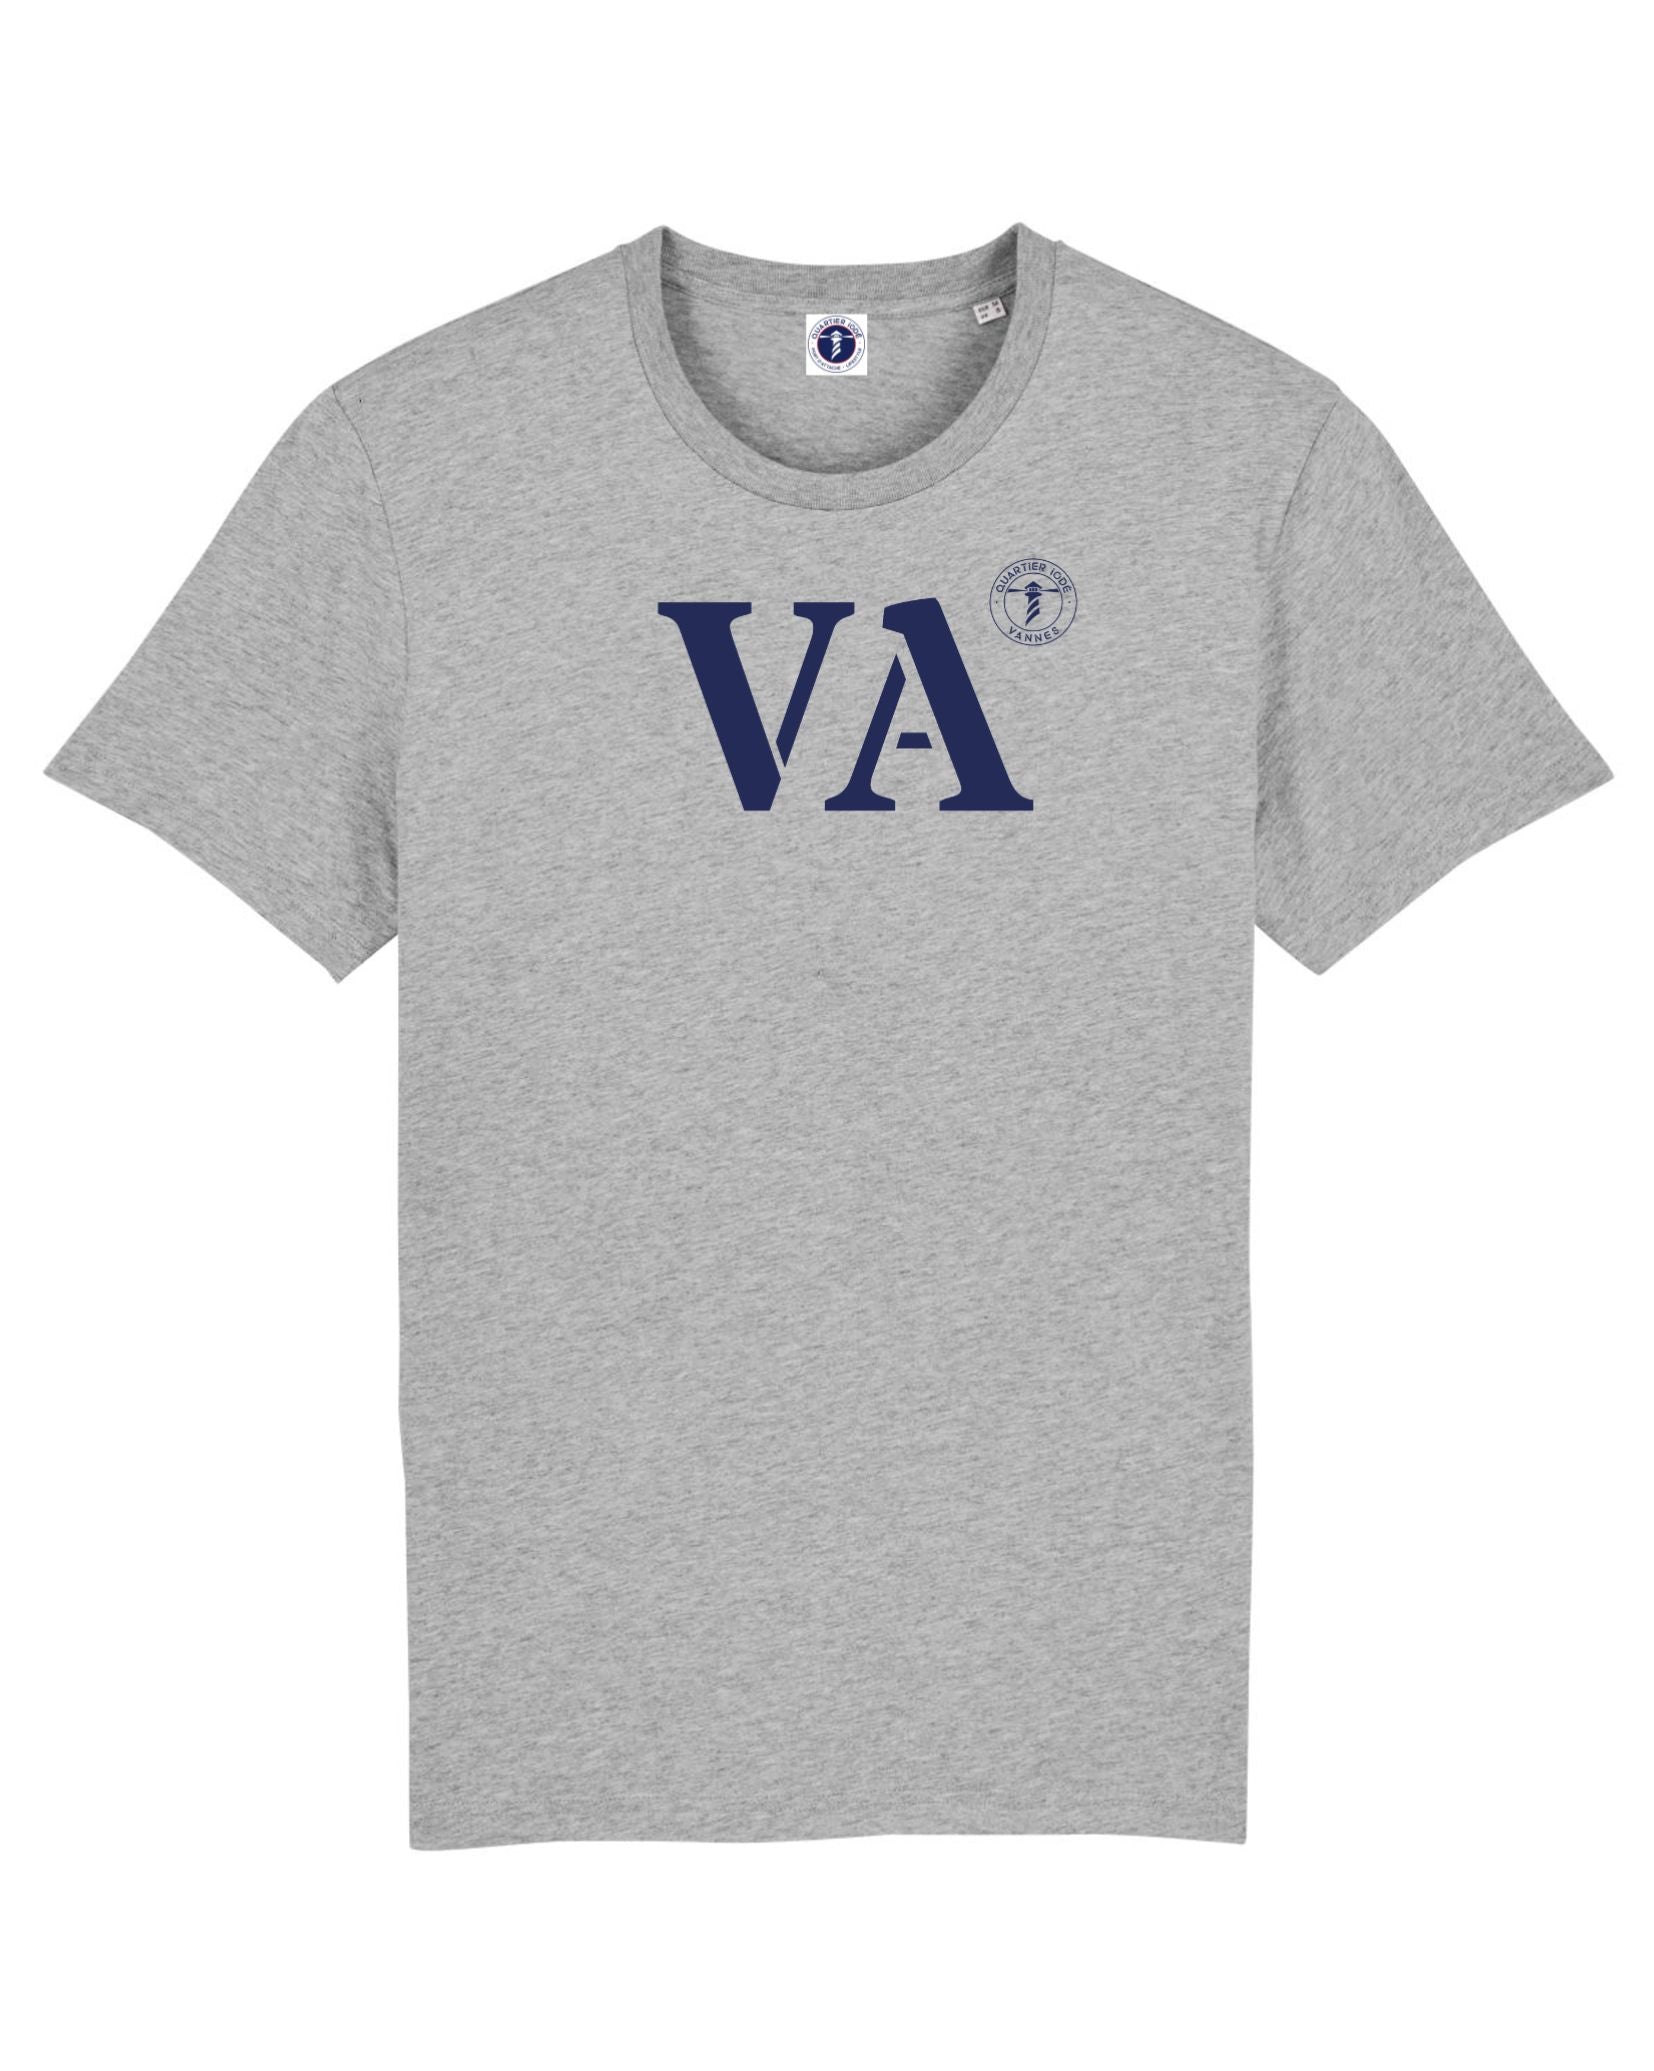 VA pour Vannes, sur ce Tshirt à l'esprit breton, par Quartier Iodé? Coupe intemporelle, idéale pour hommes et femmes. 